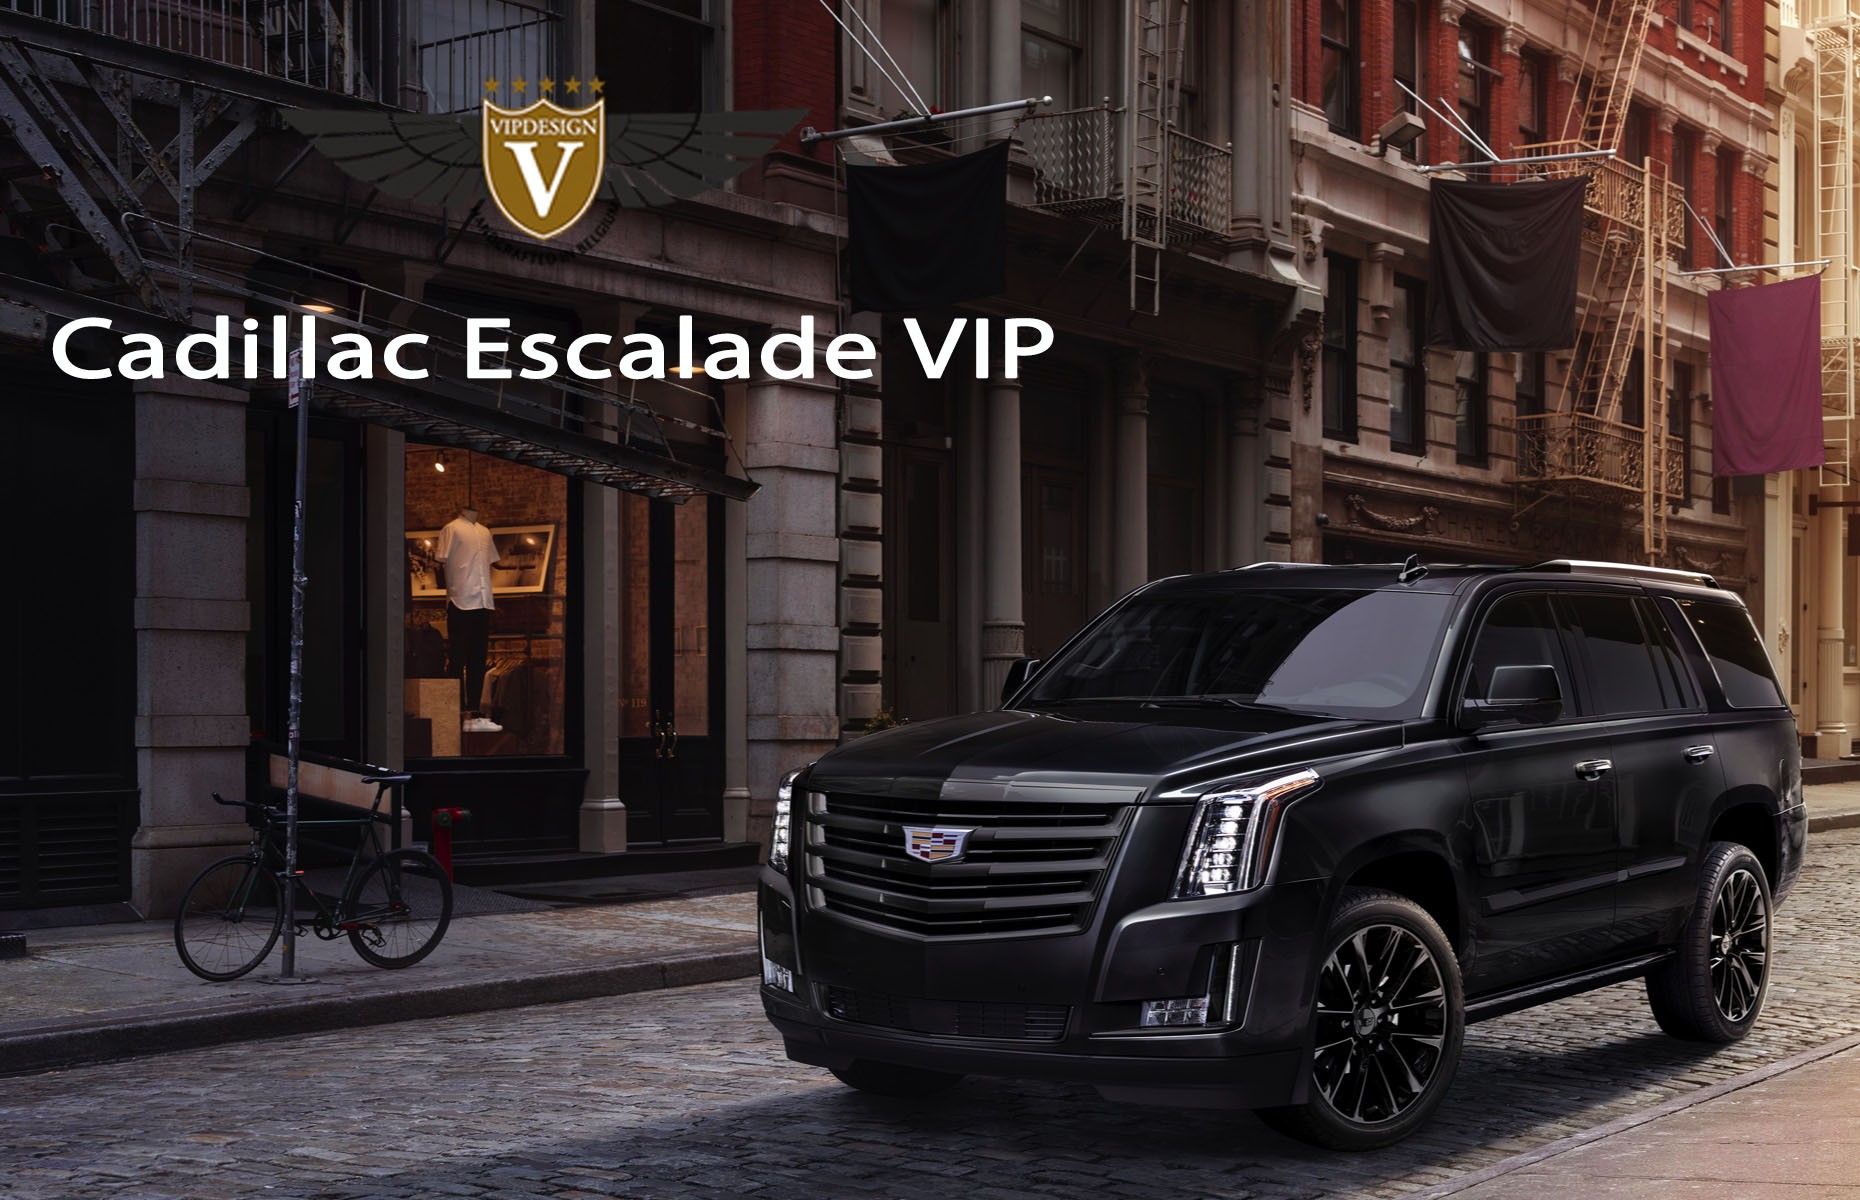 Cadillac Escalade VIP - Cadillac Escalade - VIPdesign